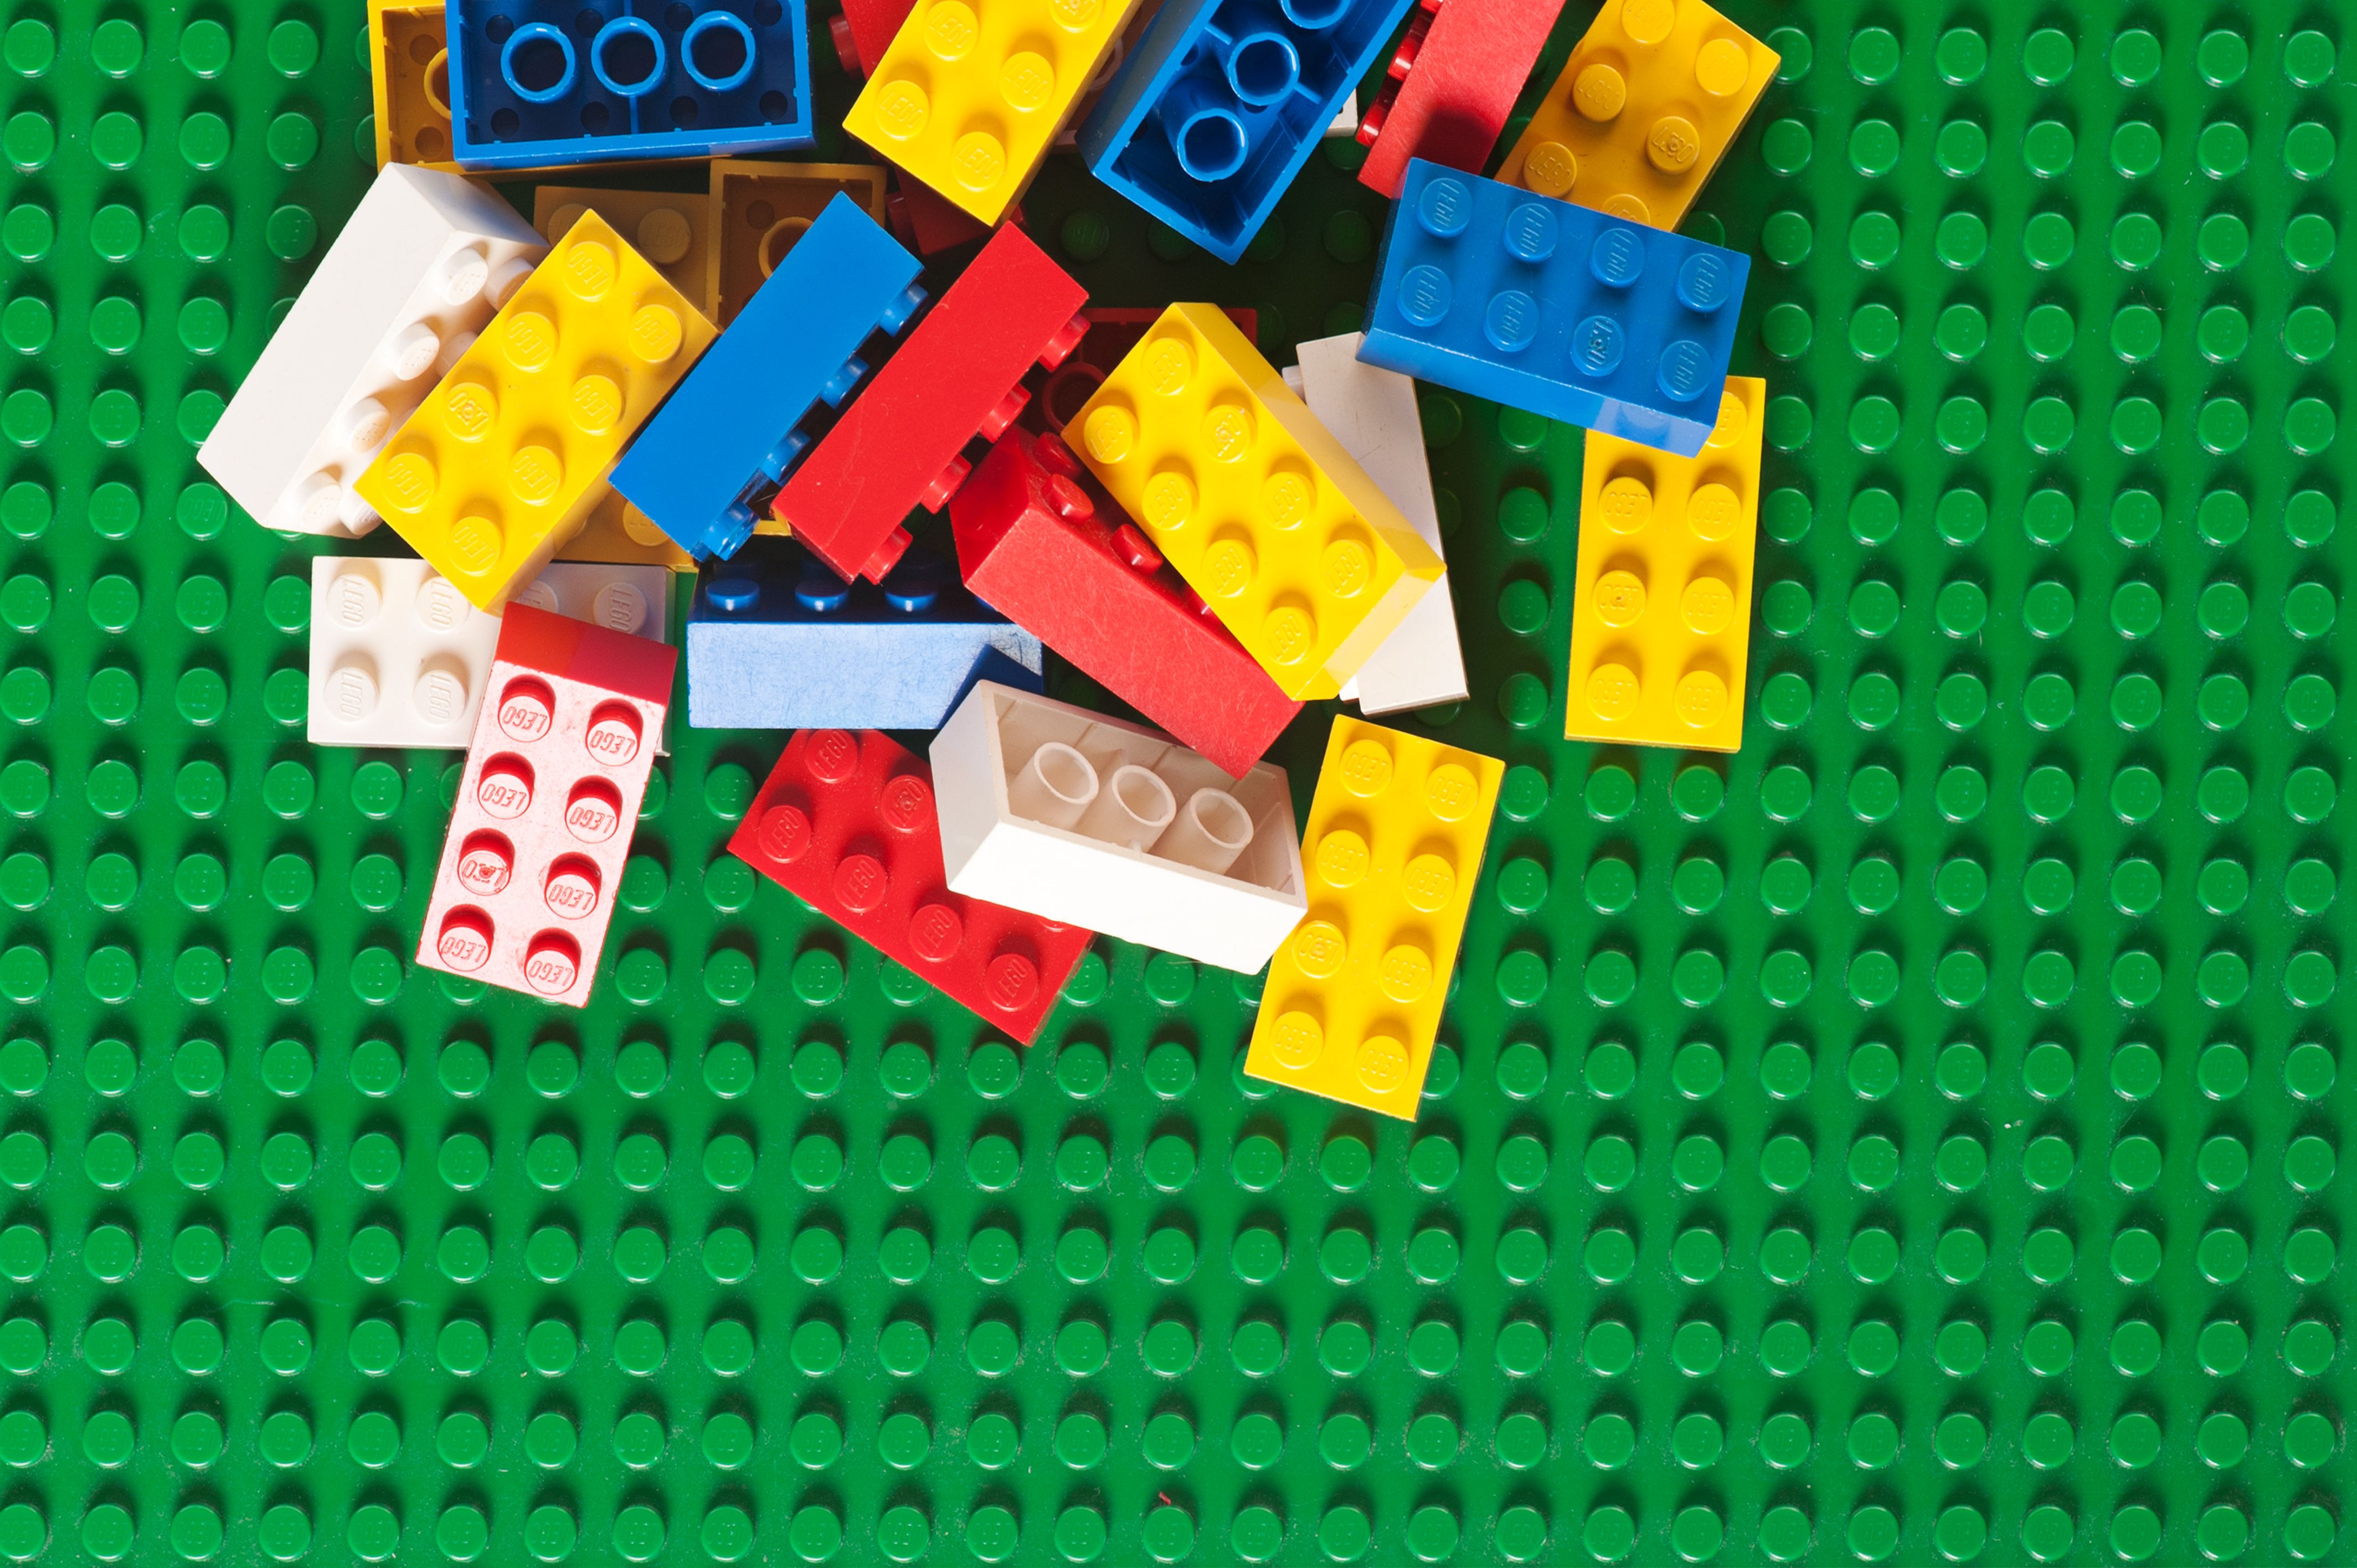 how do you build legos